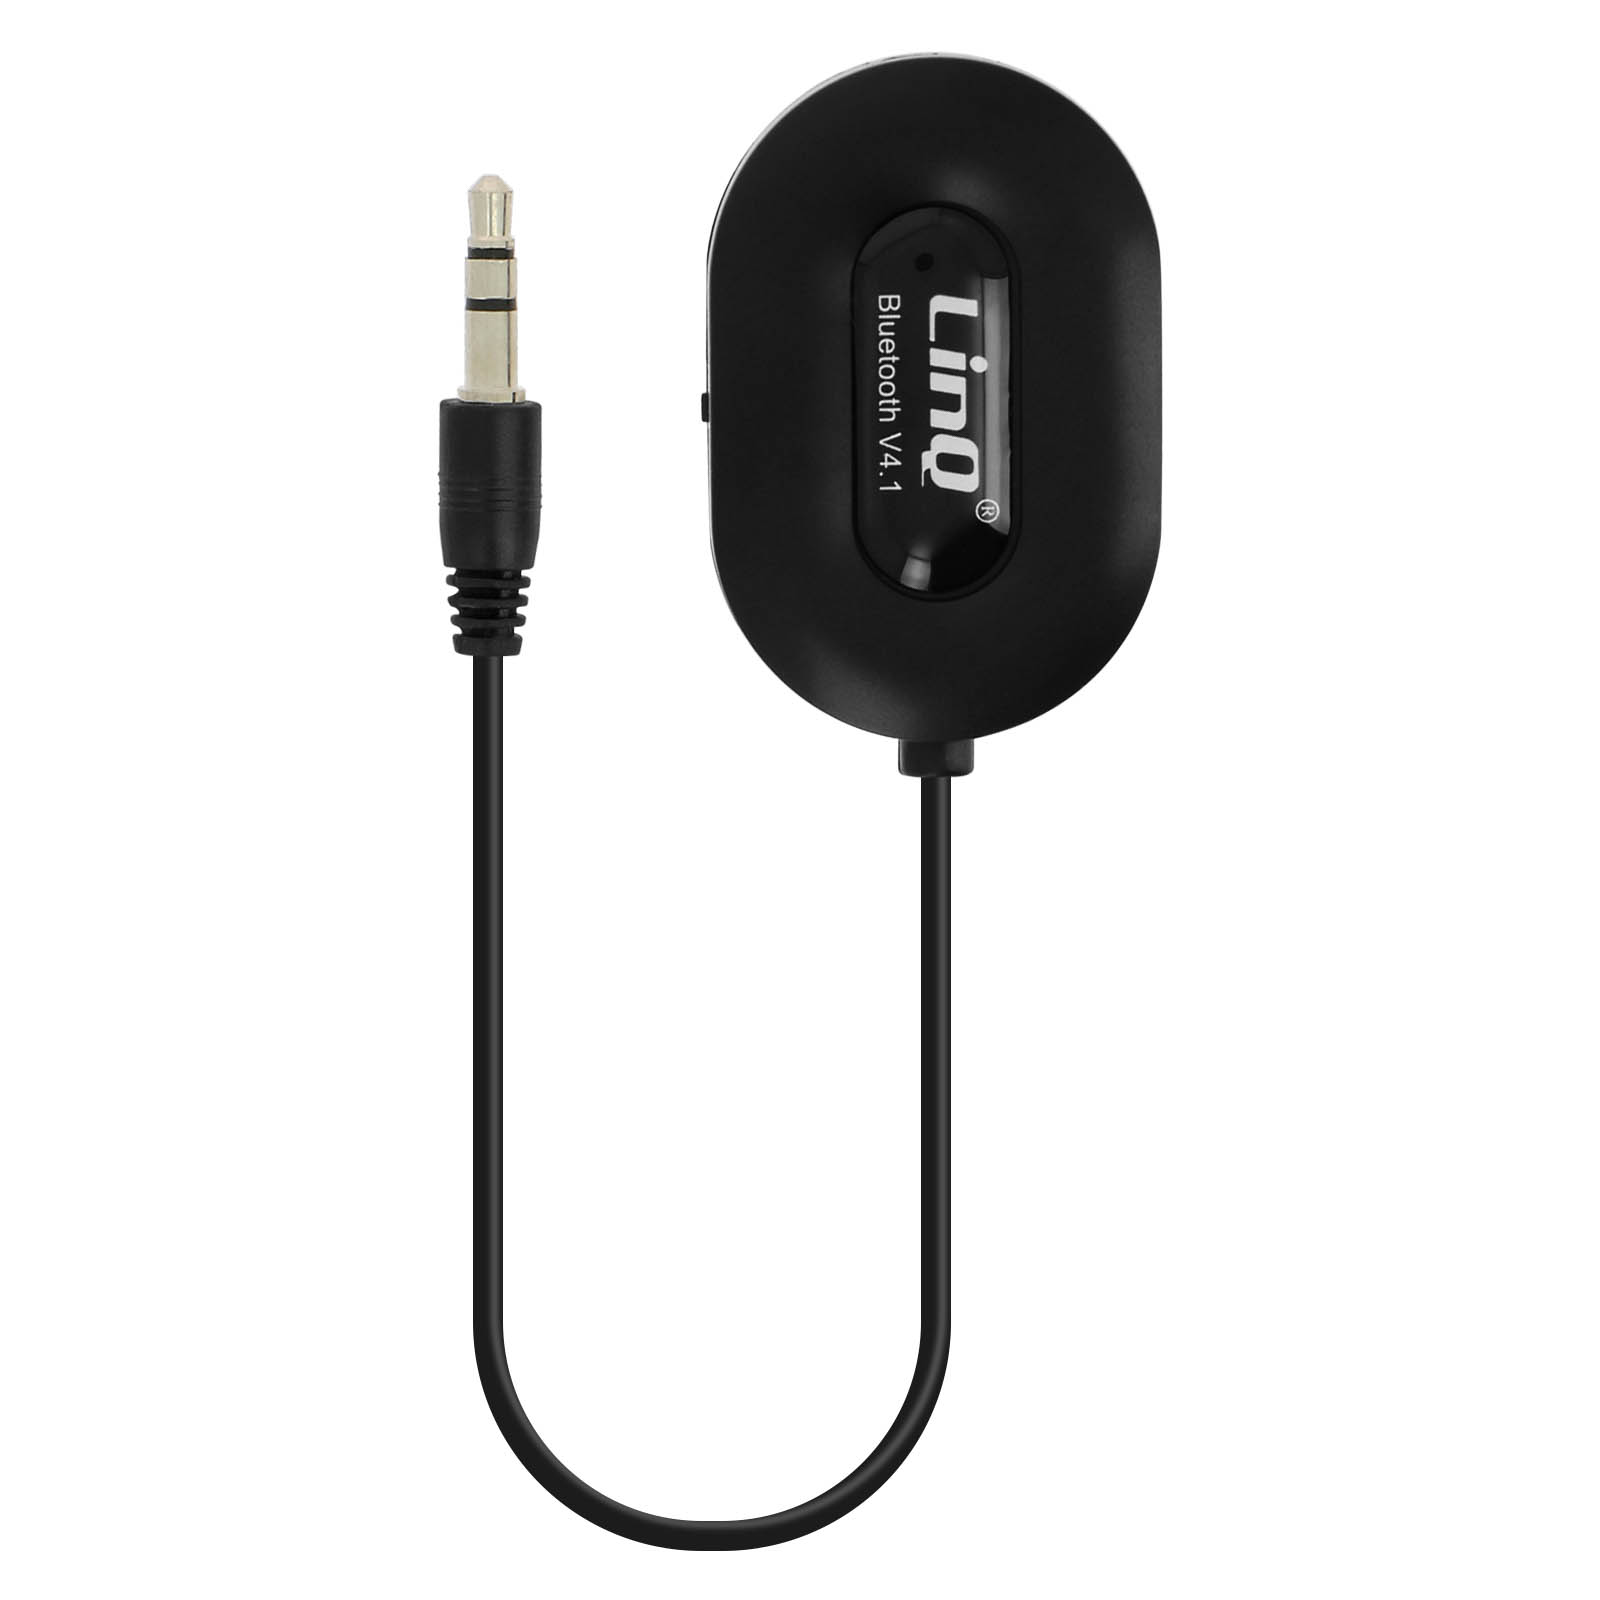 Bluetooth 4.1 Audio-Empfänger 3.5mm Klinkenadapter, LinQ – Schwarz